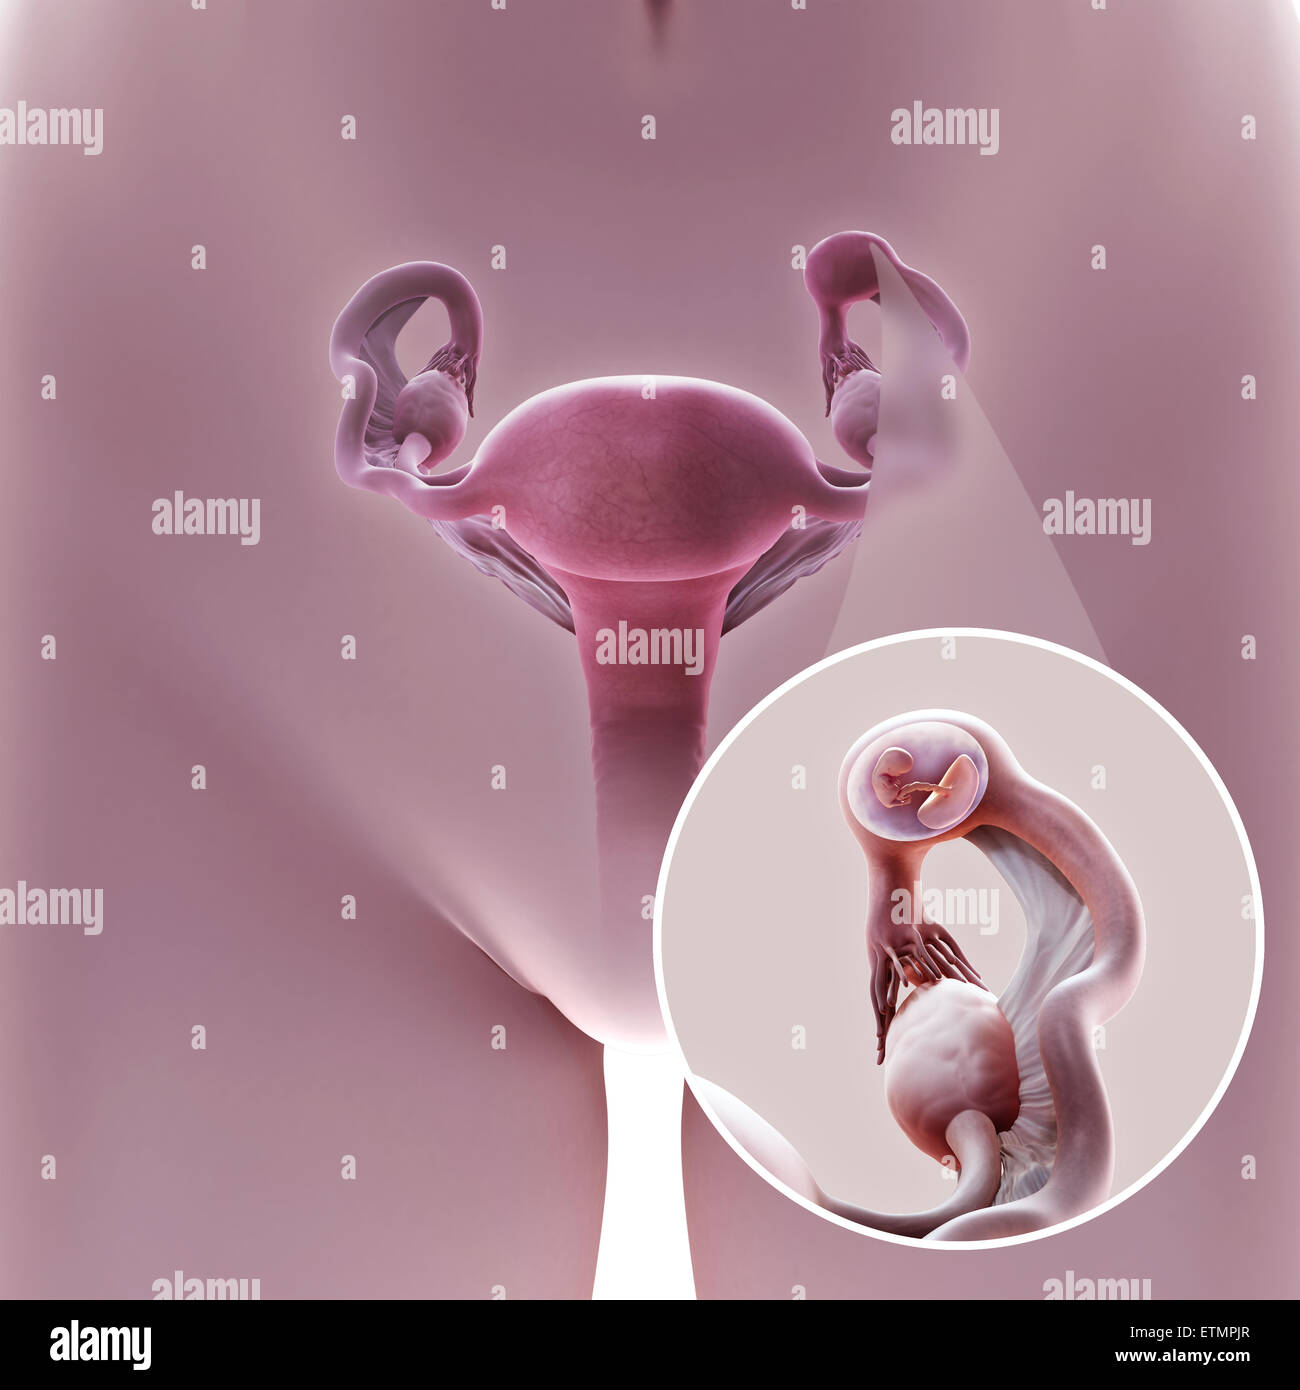 Darstellung der weiblichen Reproduktion System während einer Eileiterschwangerschaft Lage im Abschnitt Ampulle des Eileiters, zeigt ein verkleinerte Abschnitt des Embryos. Stockfoto